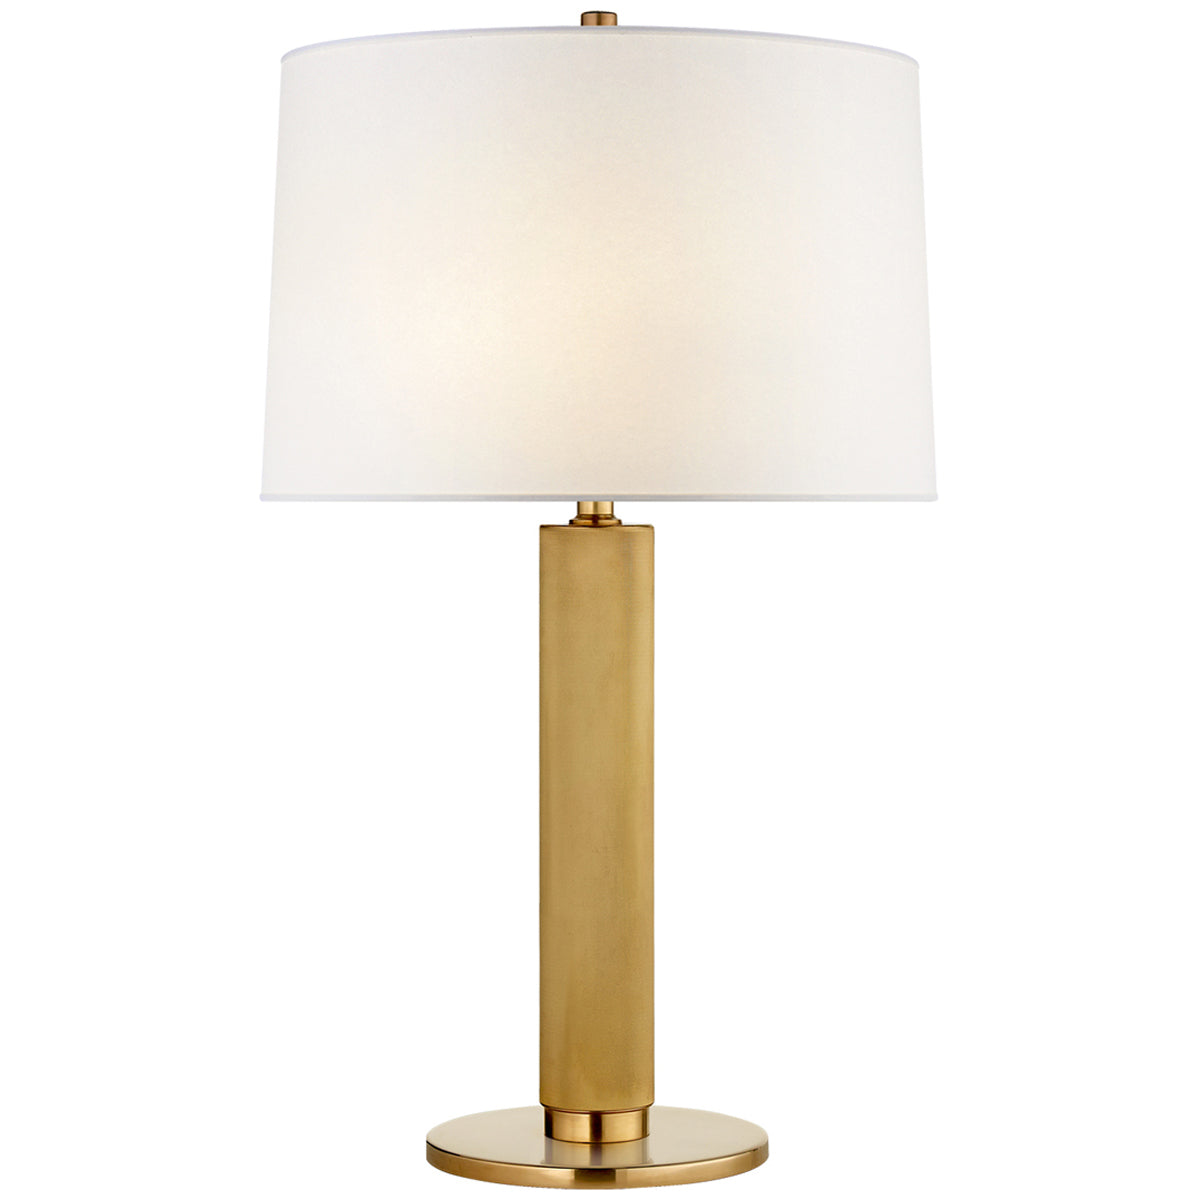 Visual Comfort Barrett Medium Knurled Table Lamp